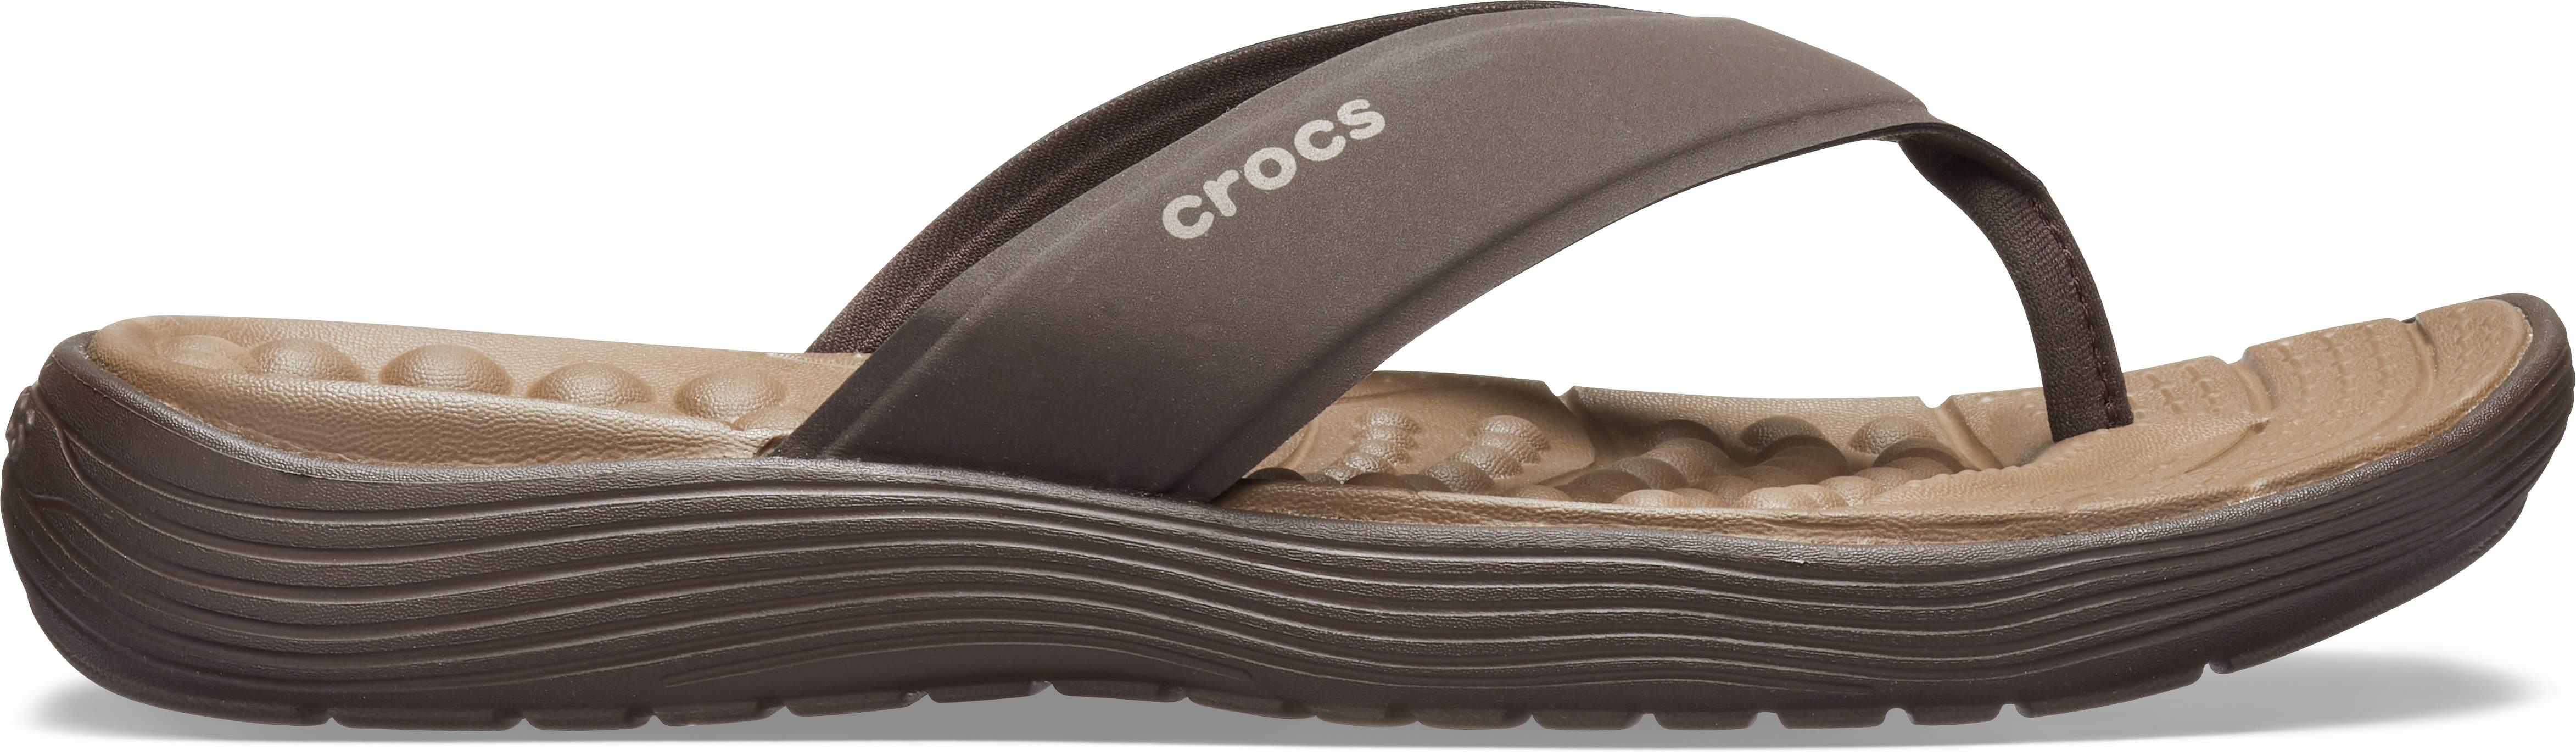 women's crocs reviva flip